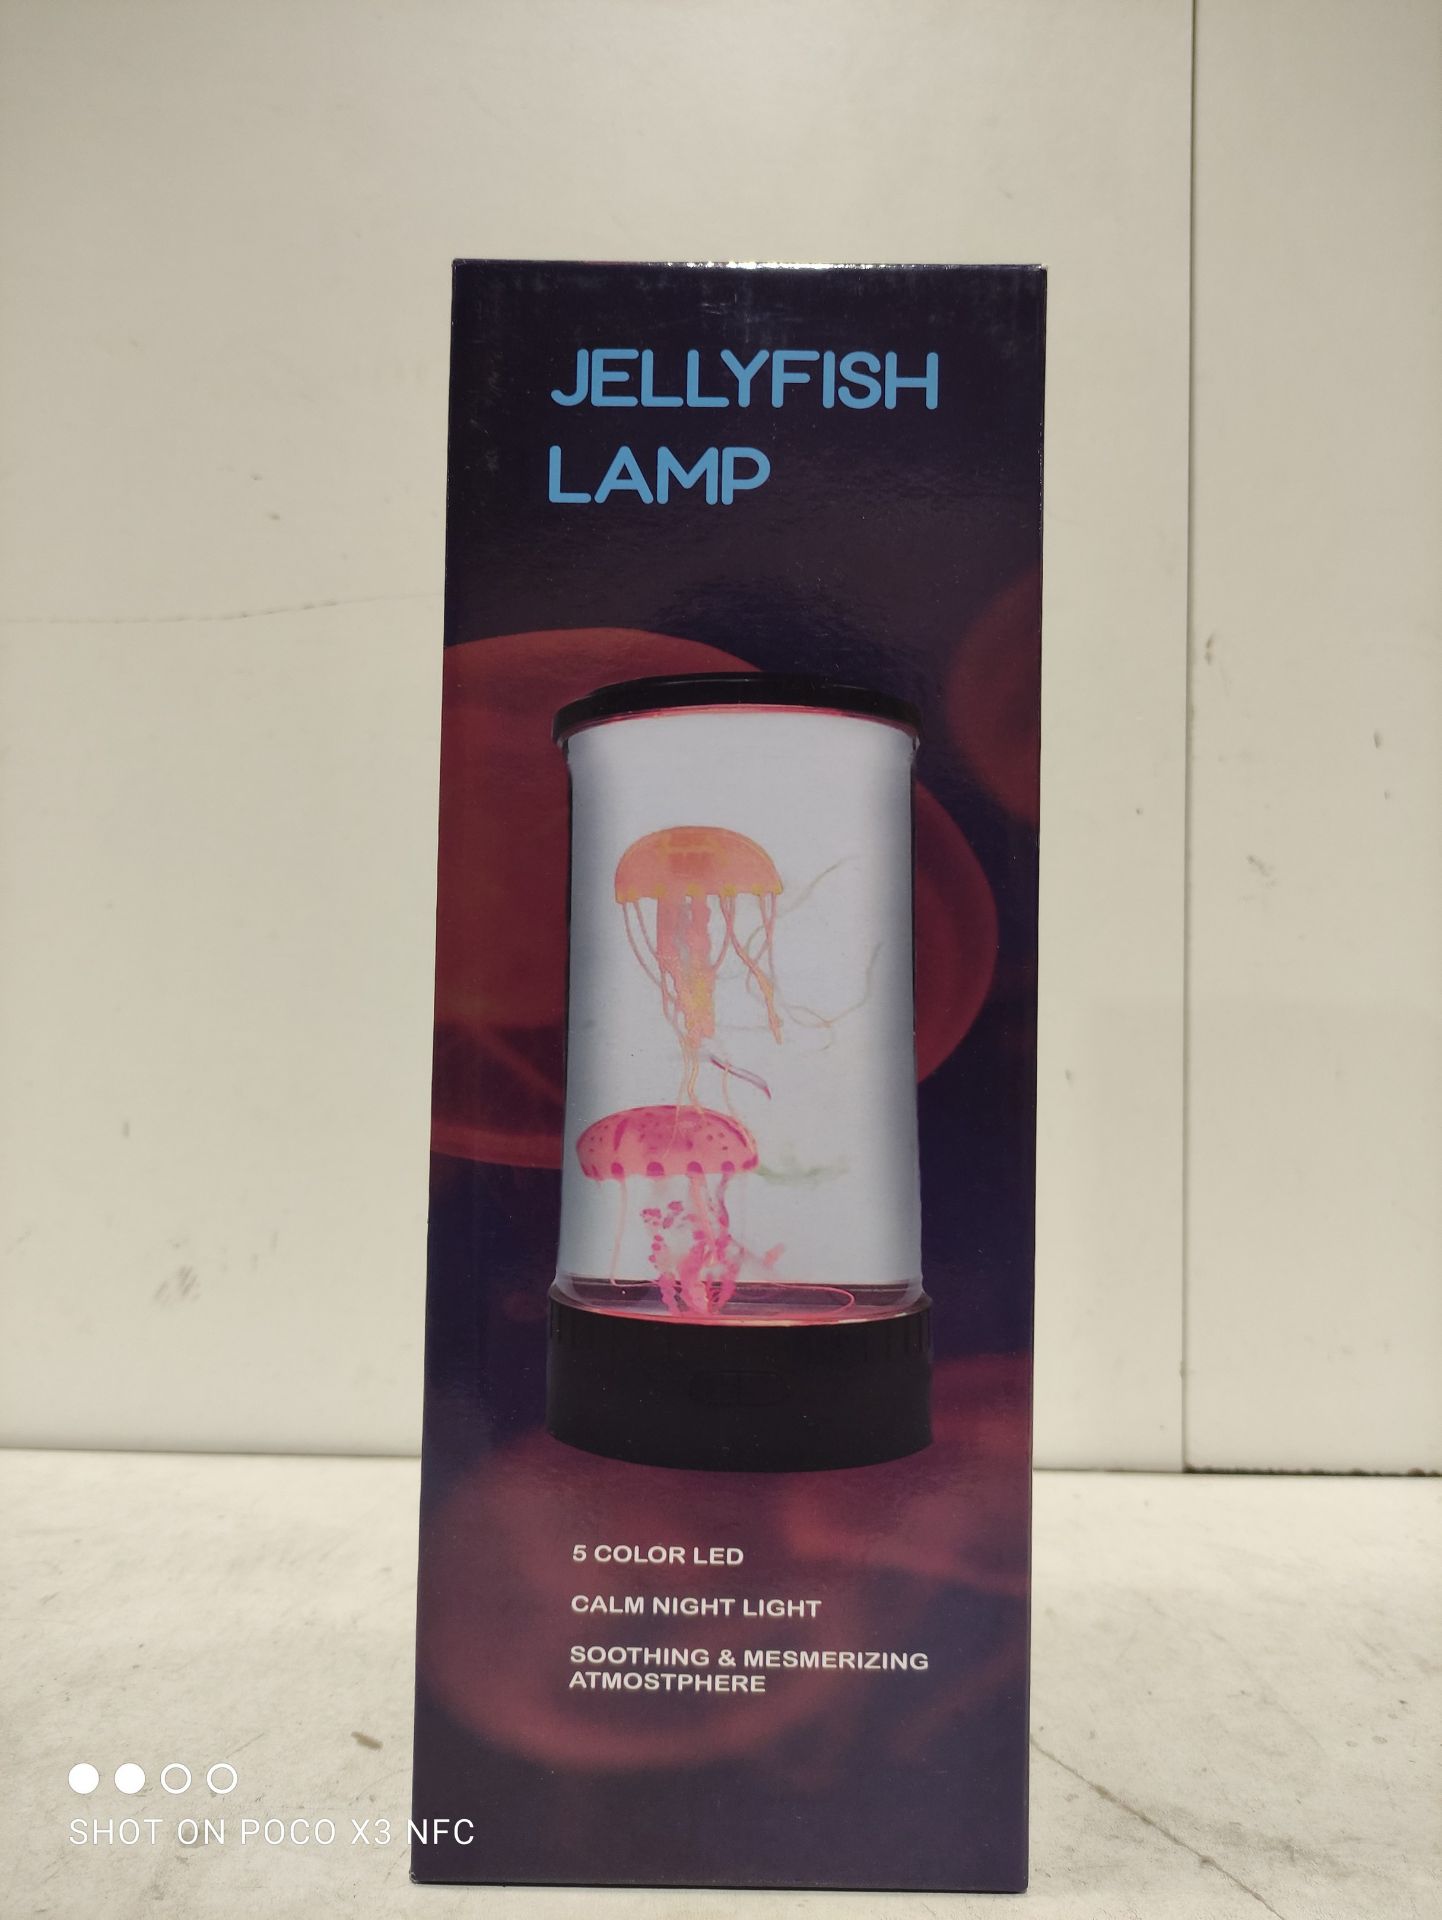 RRP £19.99 Jellyfish Lamp - Image 2 of 2